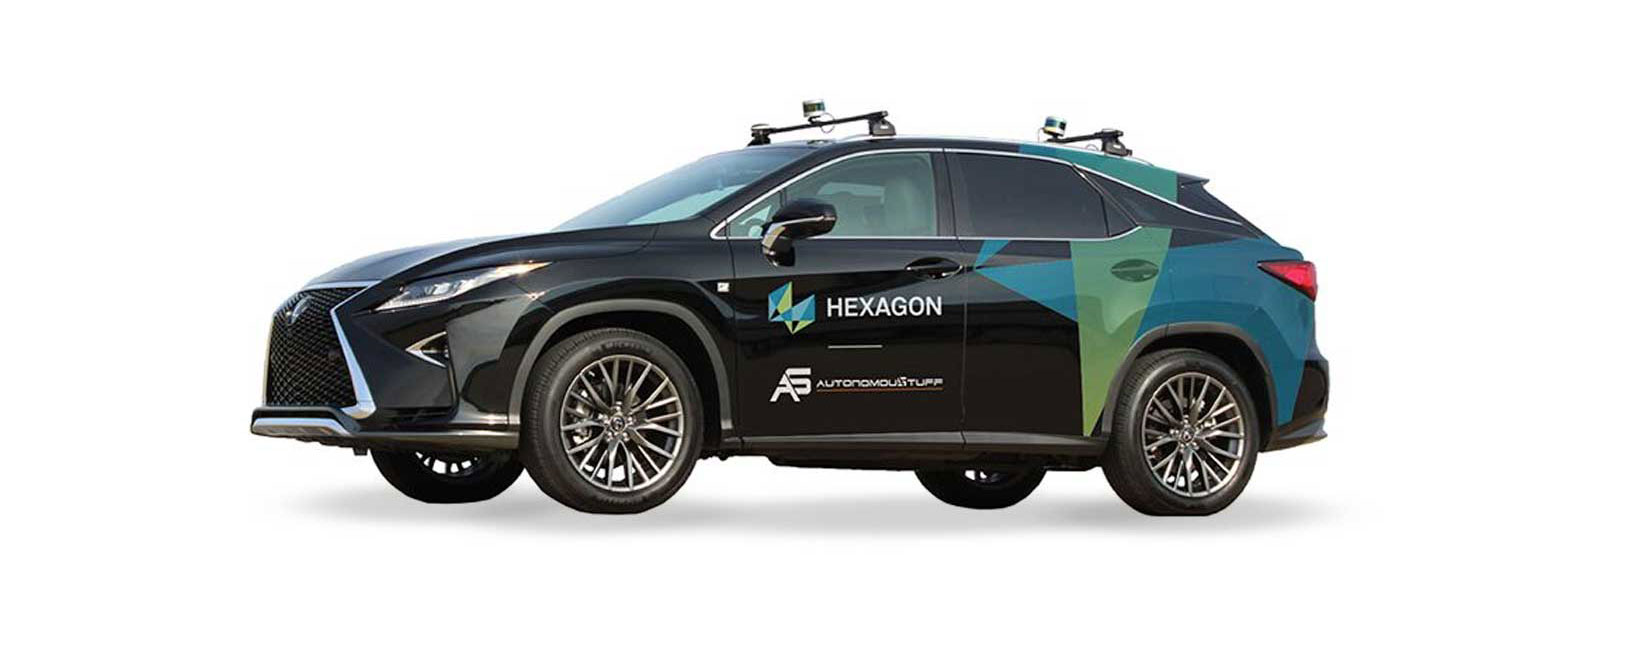 Vista de um veículo com a marca Hexagon com recursos de direção eletrônica